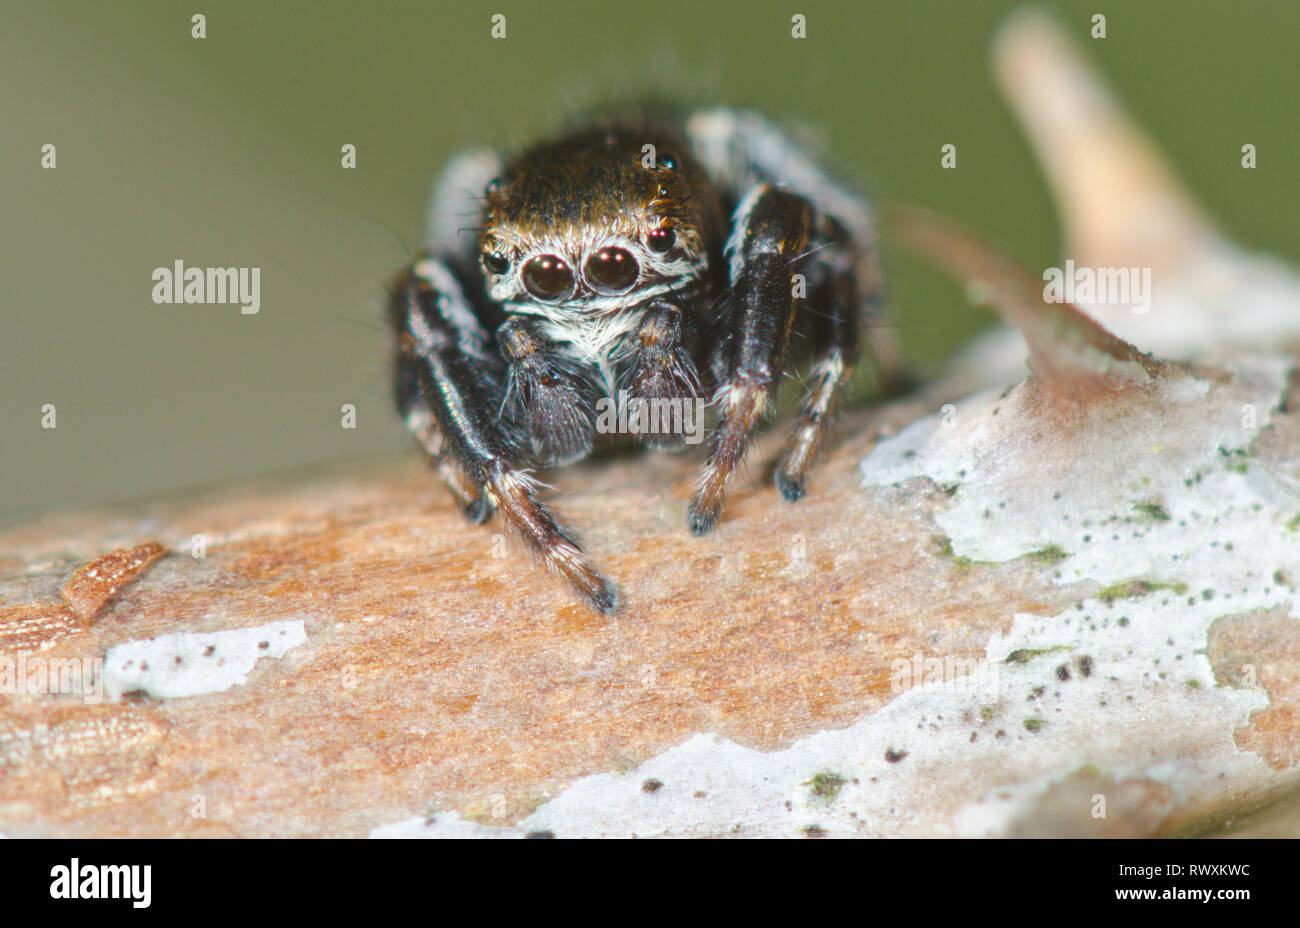 Macho Puente Arqueado Jumping Spider (Evarcha arcuata) en reposo, Salticidae. Sussex, UK Foto de stock